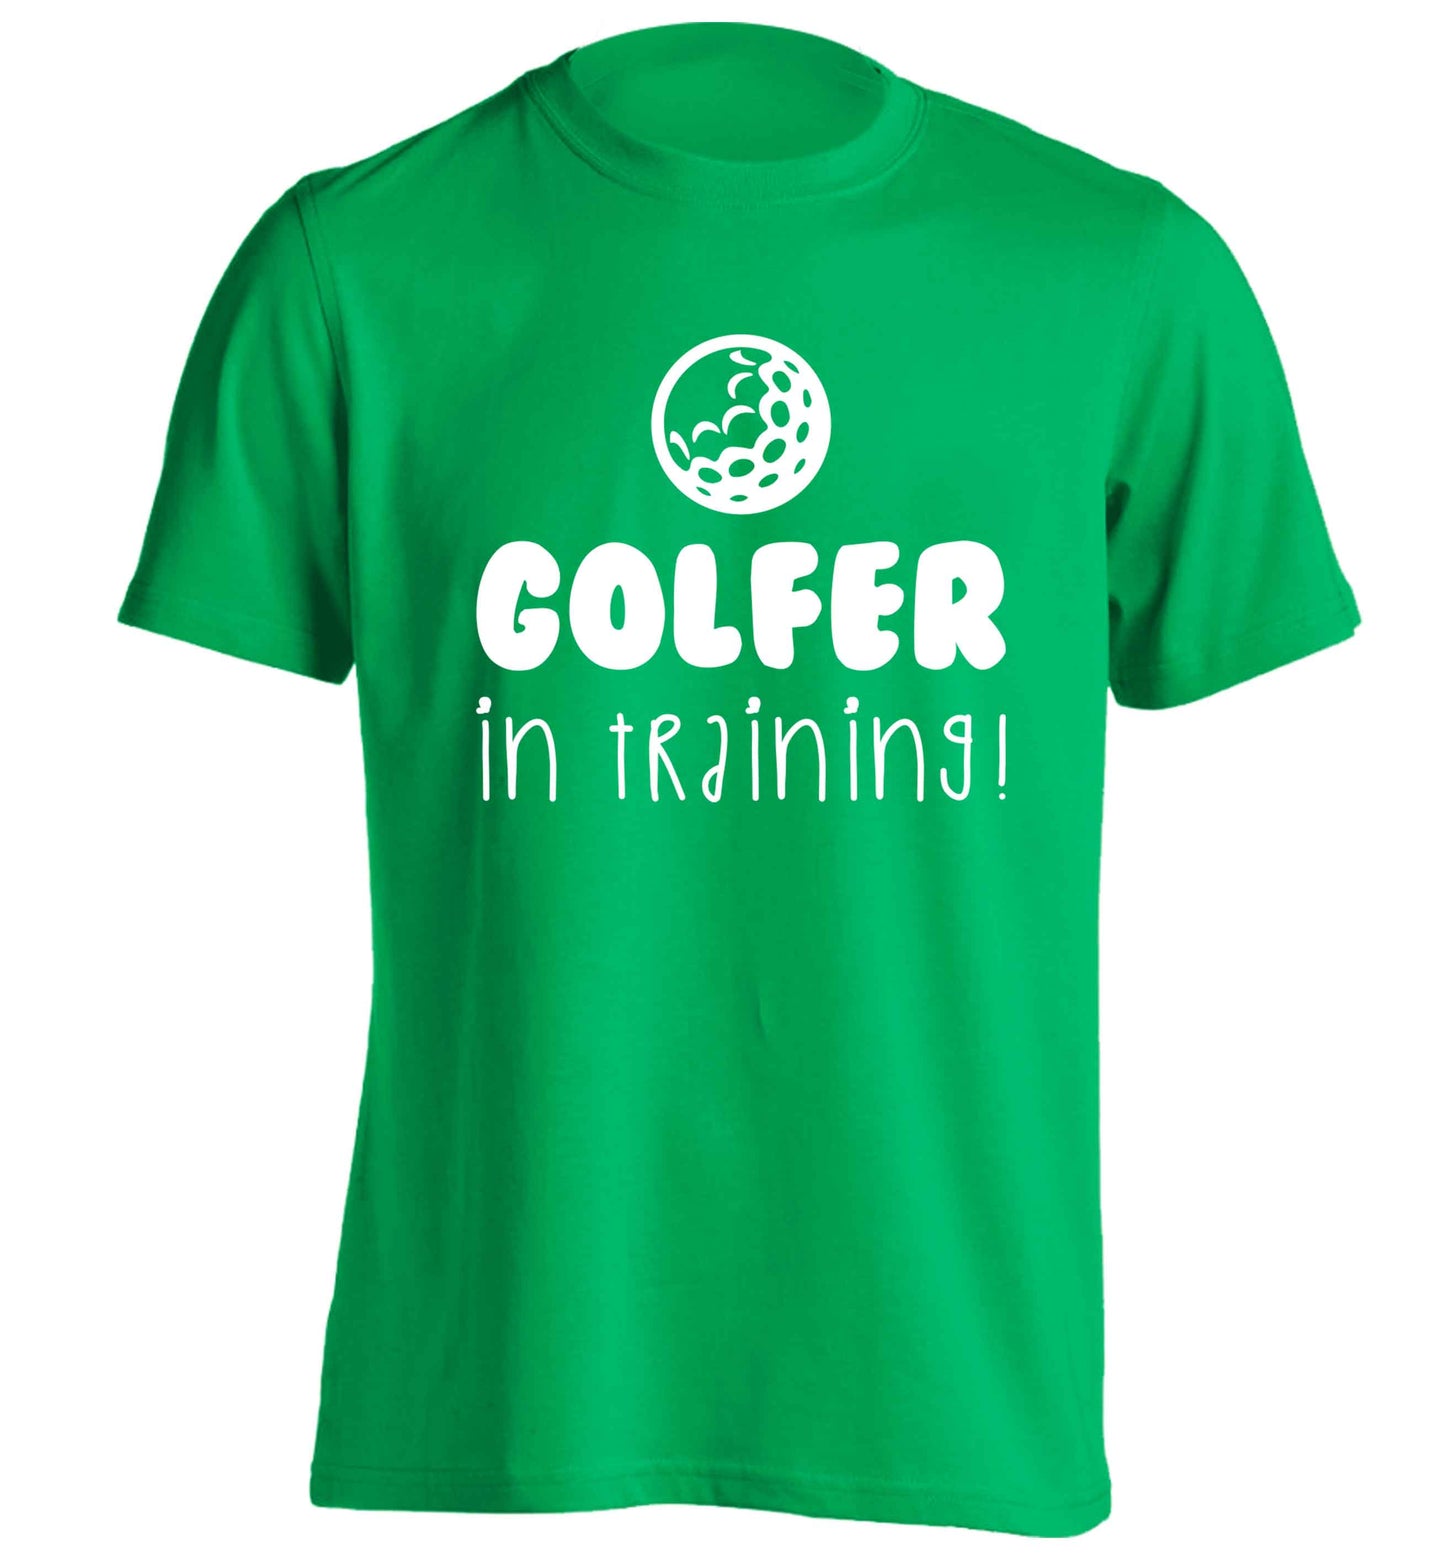 Golfer in training adults unisex green Tshirt 2XL